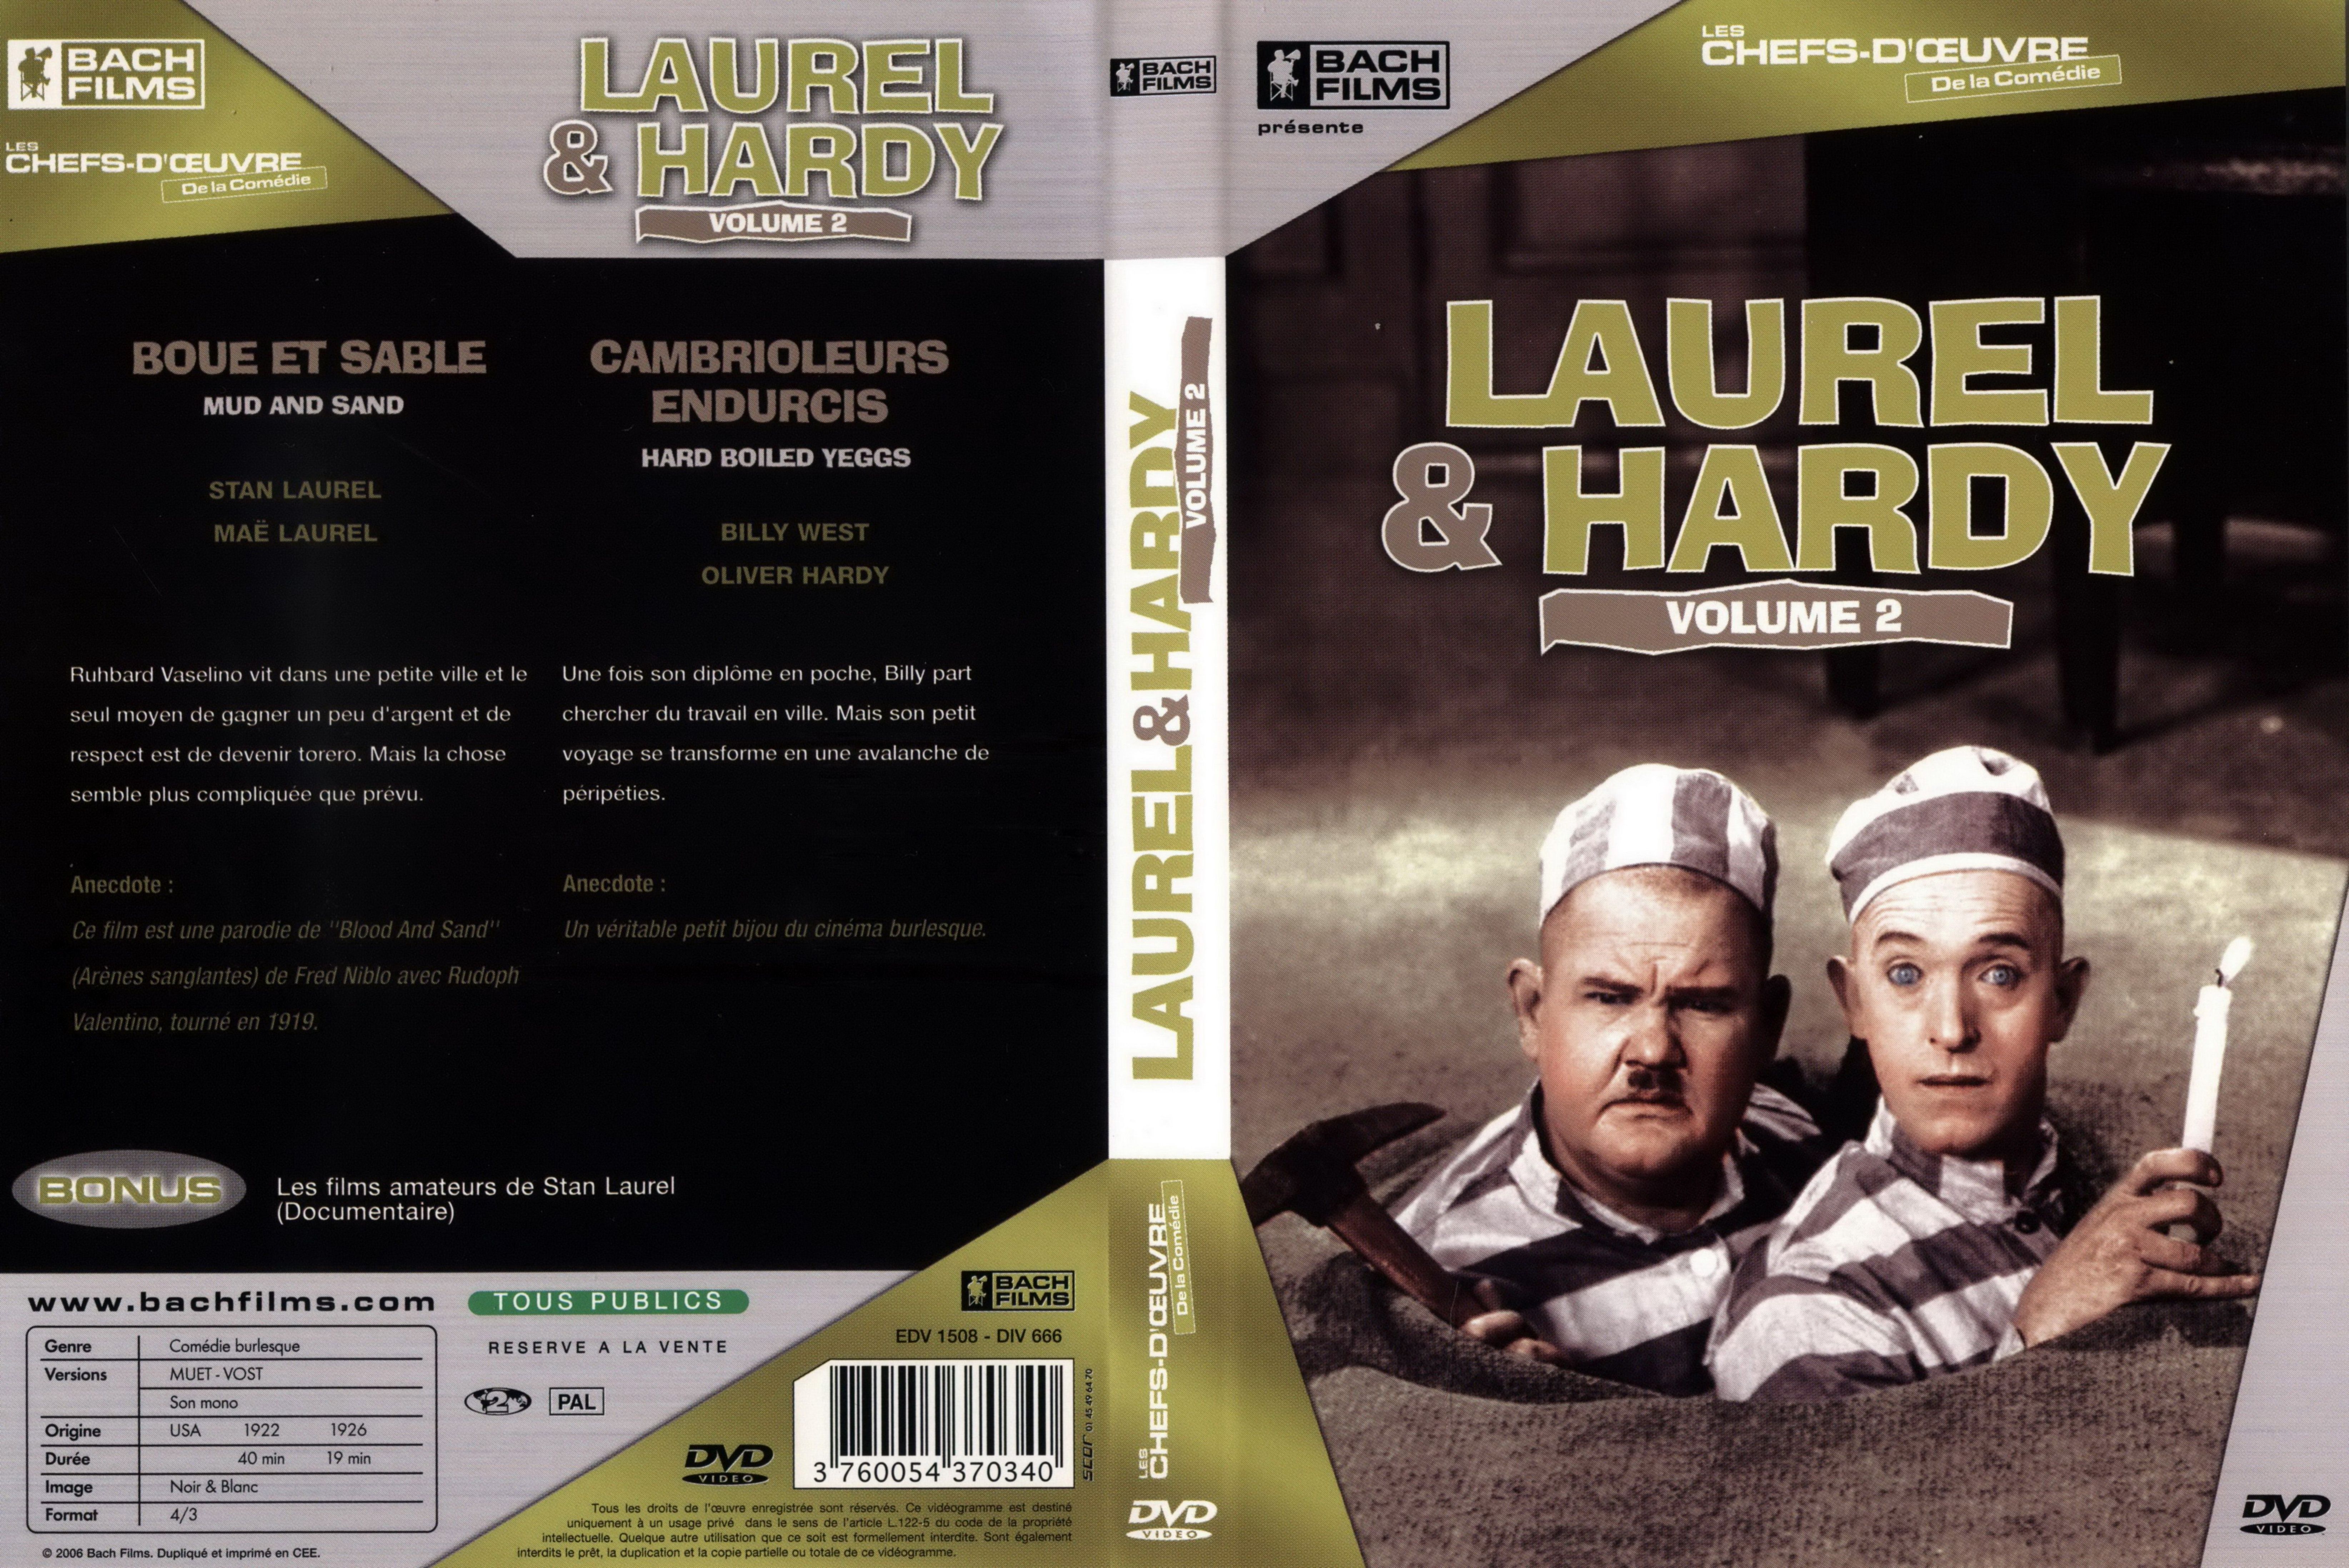 Jaquette DVD Laurel et Hardy vol 2